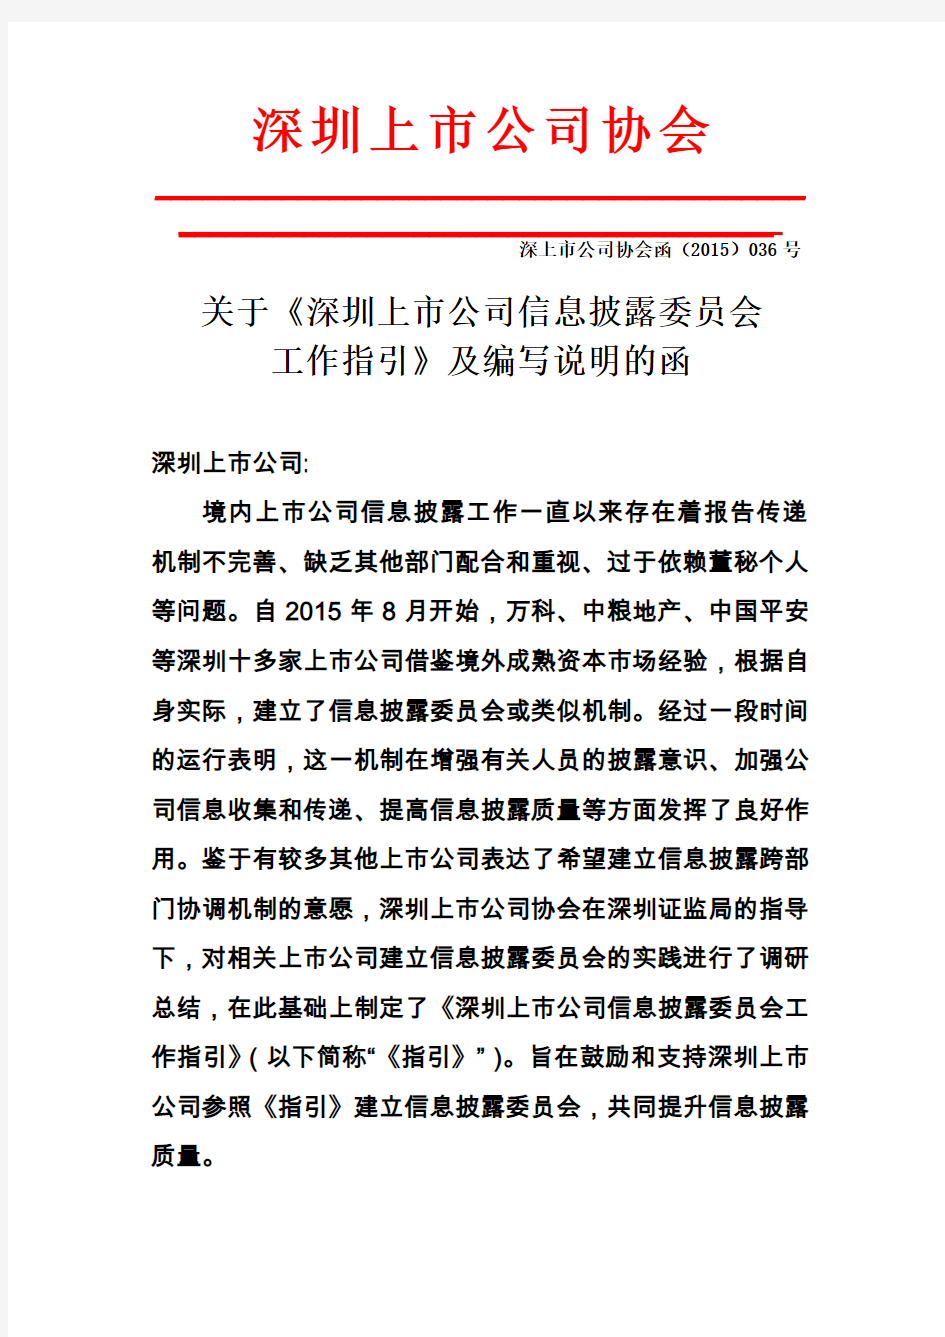 深上市公司协会函(2015)036号 关于《深圳上市公司信息披露委员会工作指引》及编写说明的函